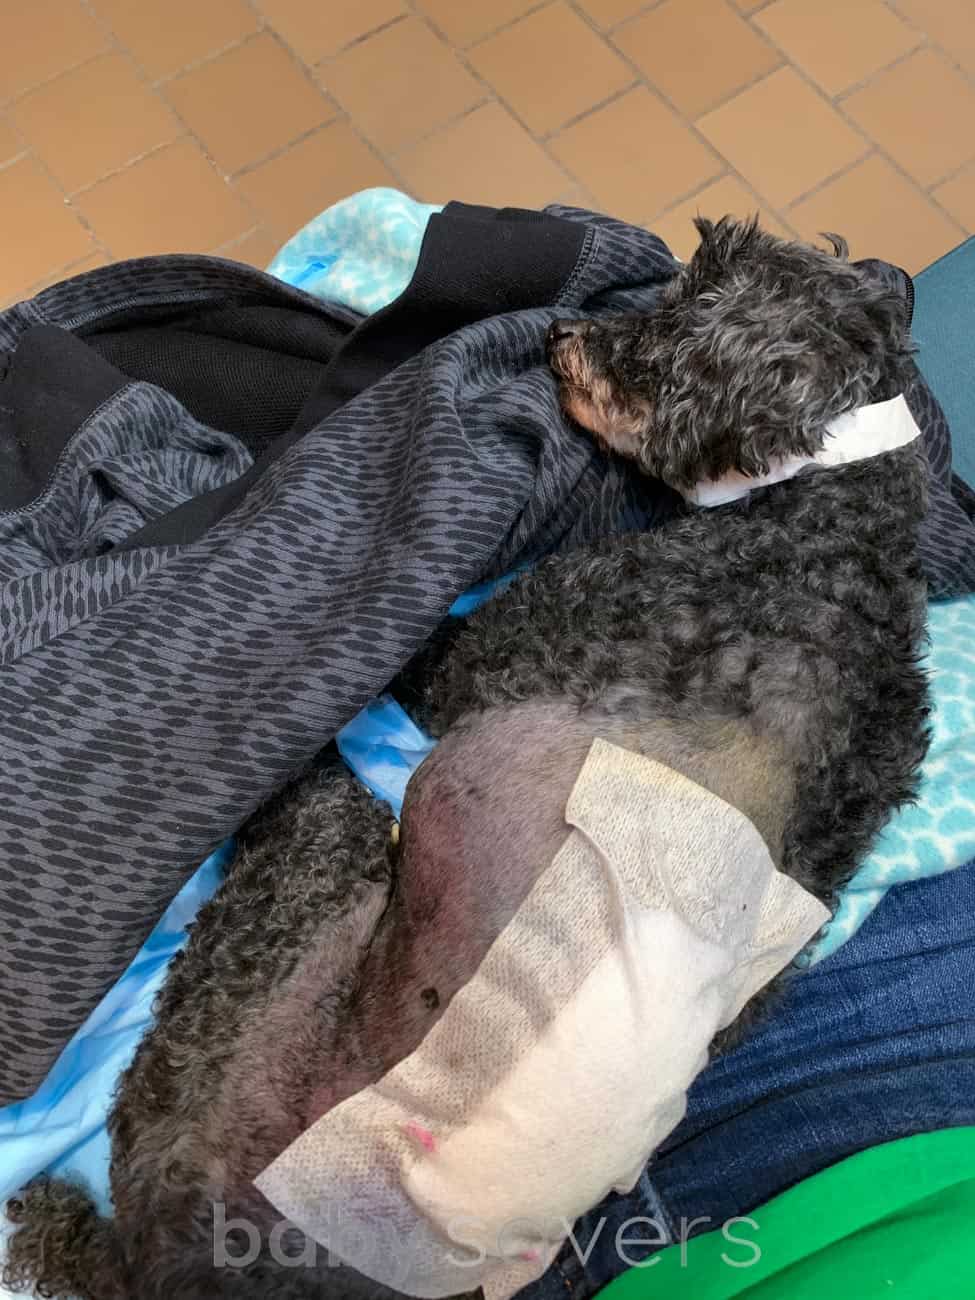 bruised dog with bandage sleeping